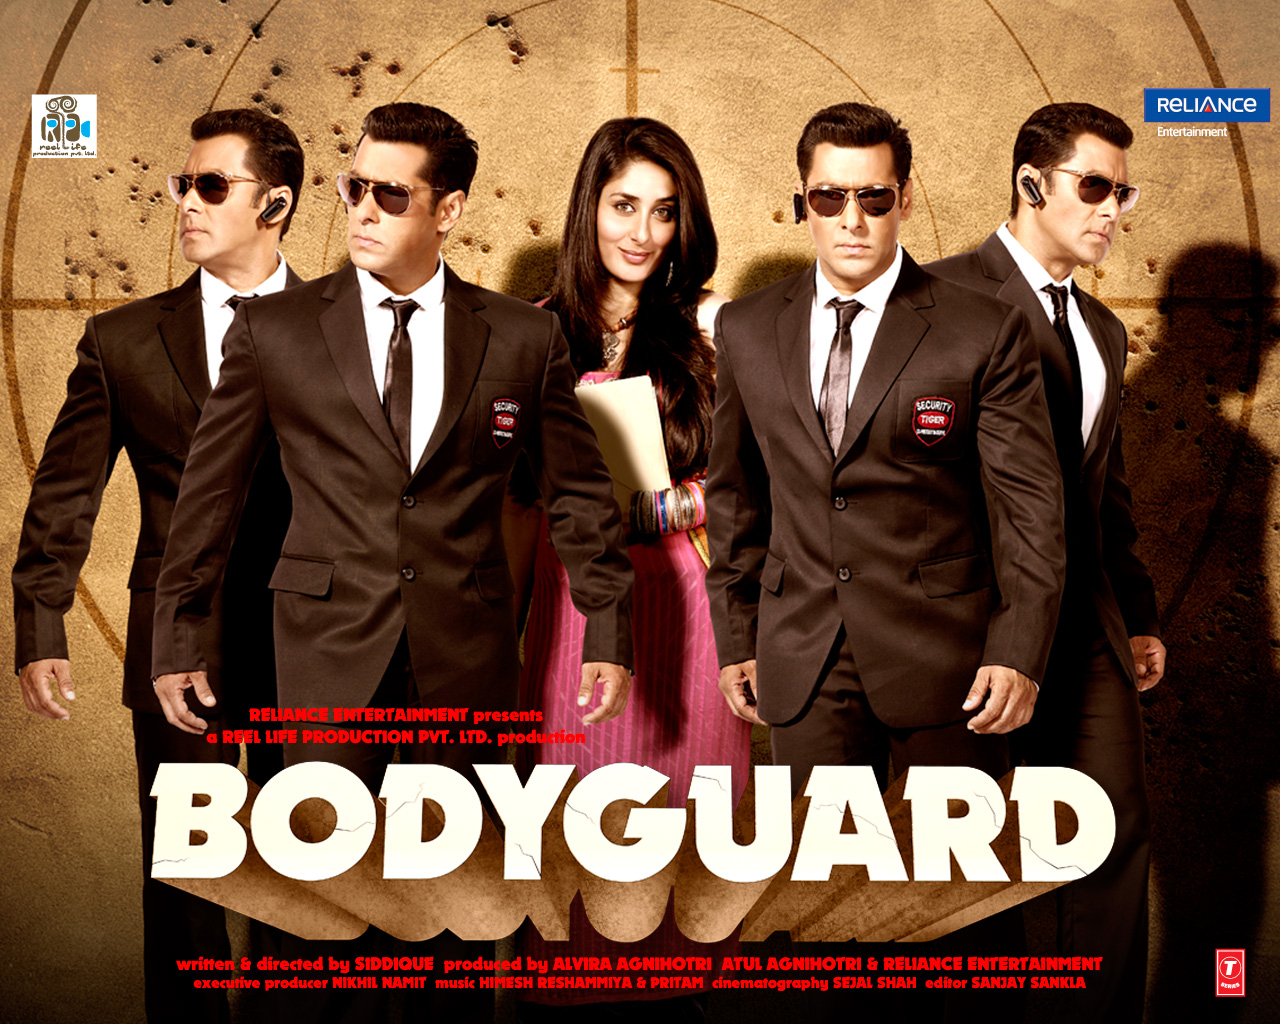 https://blogger.googleusercontent.com/img/b/R29vZ2xl/AVvXsEiTbmwzMFrO8R_0M4DBt1YDOusYeO6mWkTjoJfUxL2rNrlgNxAVDPthaugF8X8sAwxIOd5YcZXpIozkNa7rAnOI7ChMEKX9zNhpEqO6JoqVa62U5sI4LqQuZfkgNMGZIAtOuOwaIp8m9OKl/s1600/Bodyguard_2011_Movie.jpg